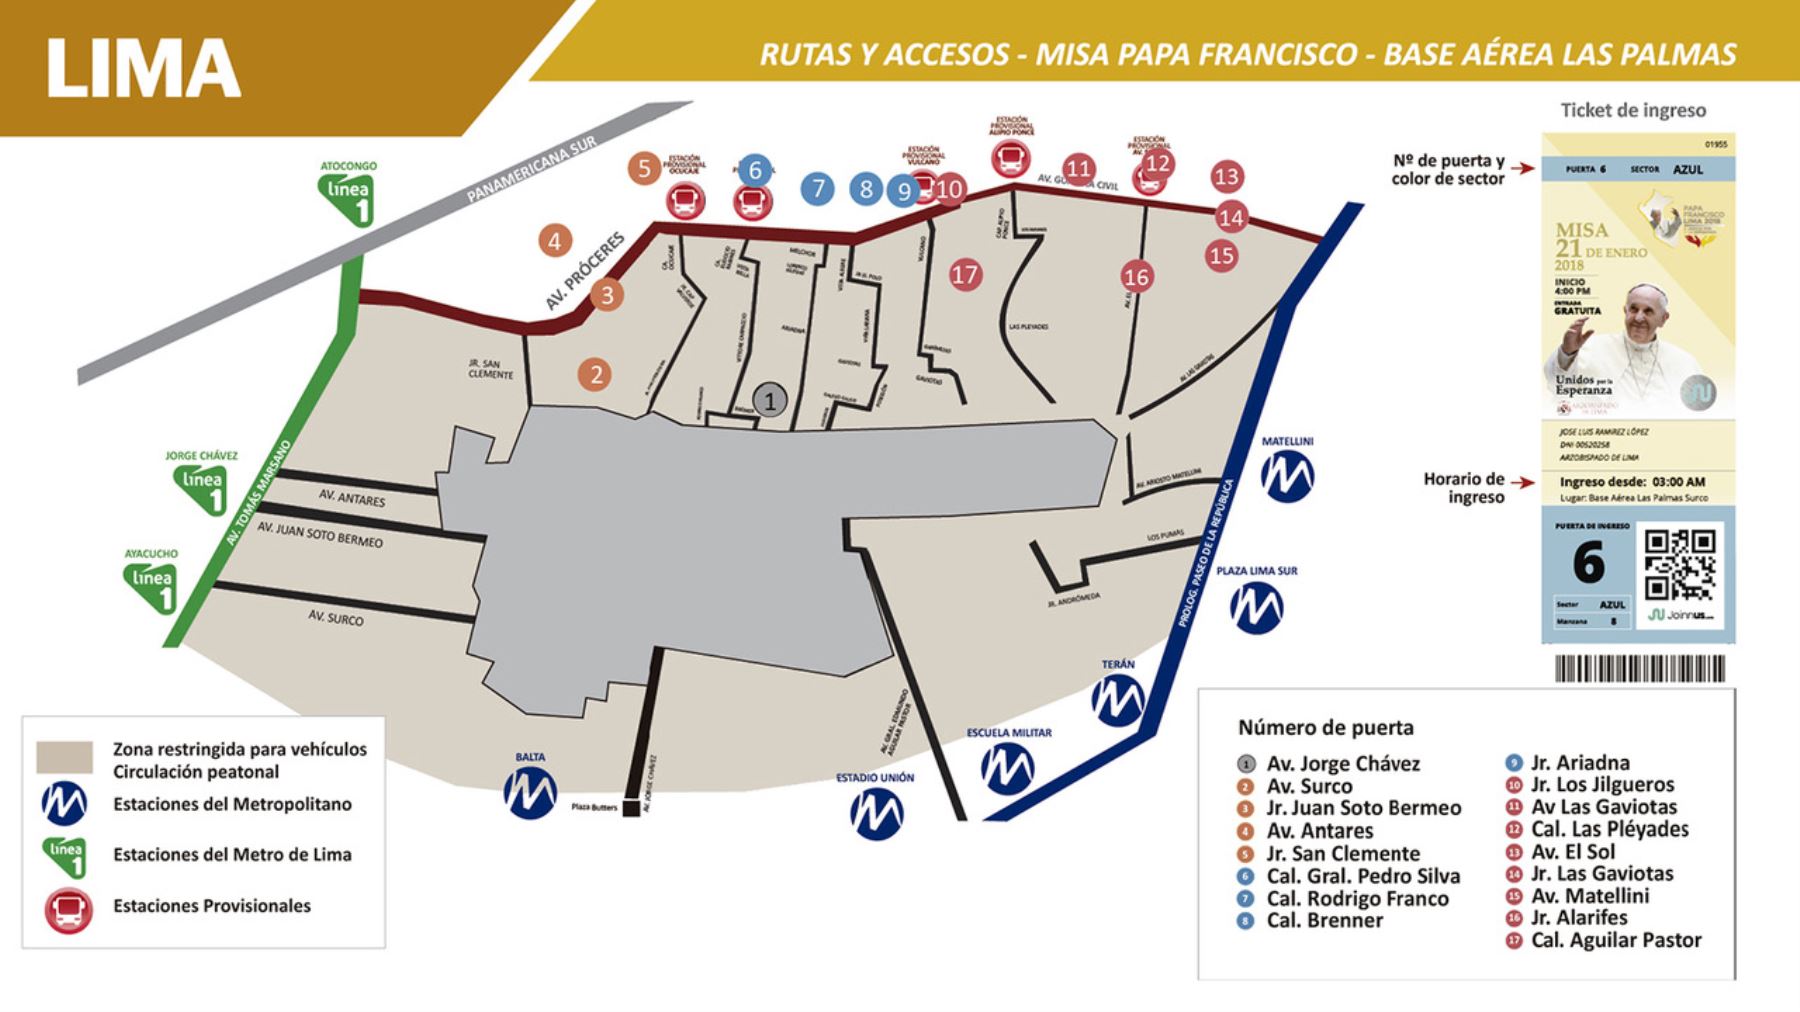 Mapa de rutas de acceso a la misa que realizará el Papa Francisco el 21 de enero en la base aérea de Las Palmas para ANDINA/Difusión